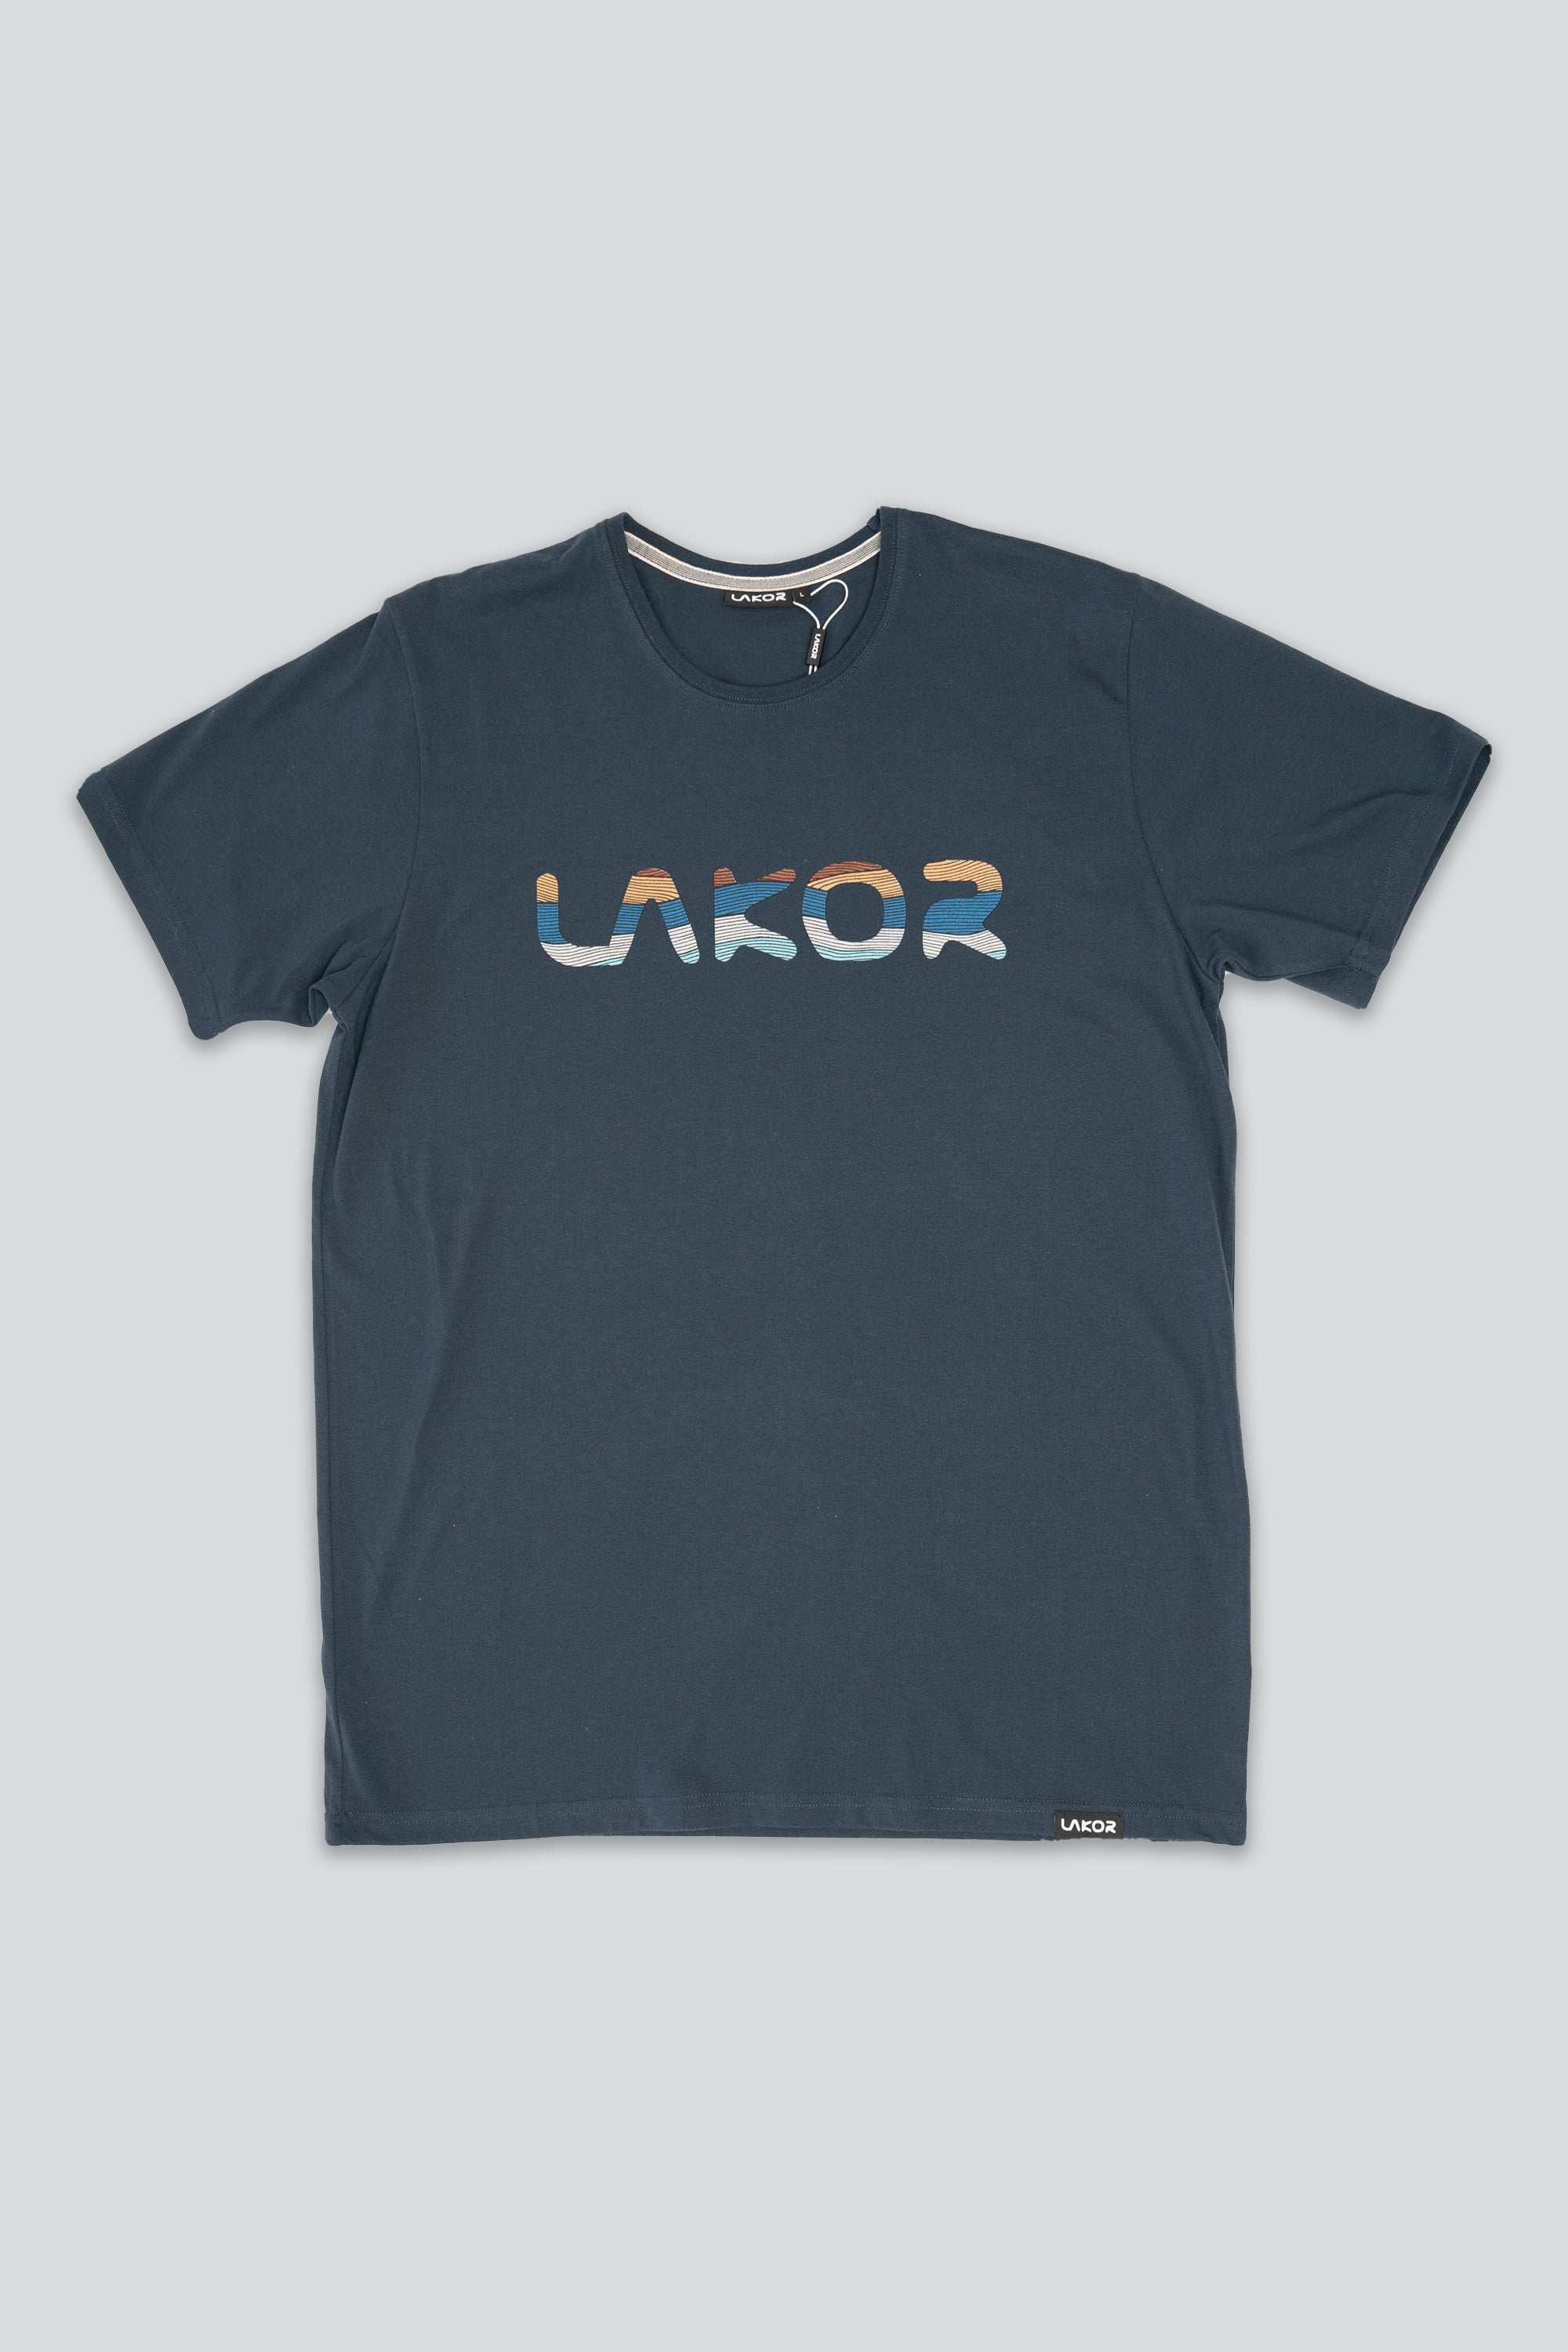 LAKOR Dunes T-shirt (Navy)